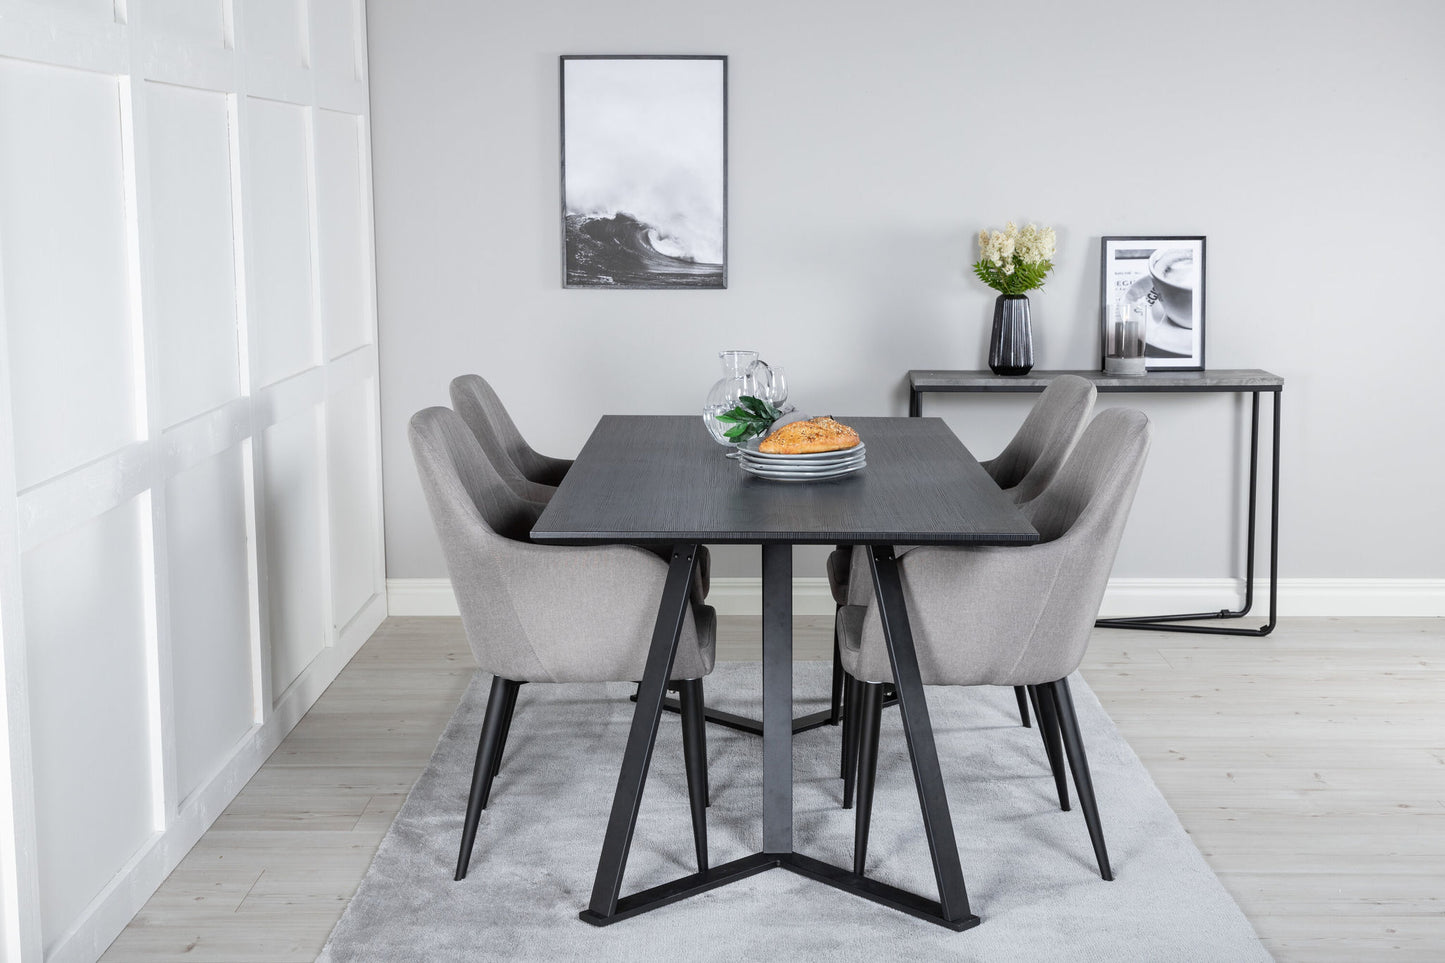 Marina spisebord - Sorter top / sorte ben +komfortstol 2 -pakke polargrå - sorte ben _4